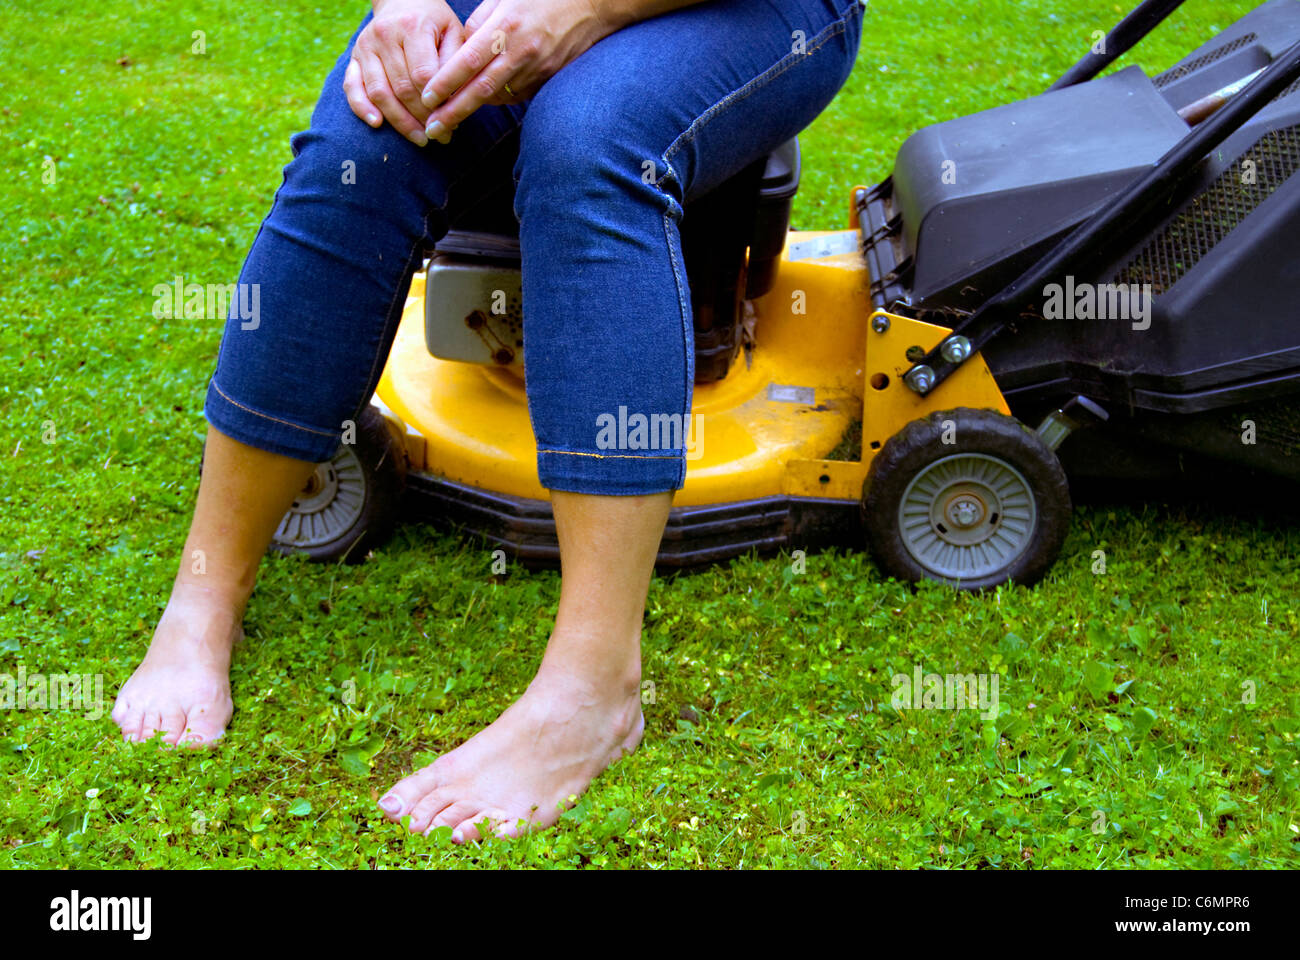 Frau nimmt sich eine Auszeit vom Gartenbau einerlei, sitzt auf einem Rasenmäher Stockfoto